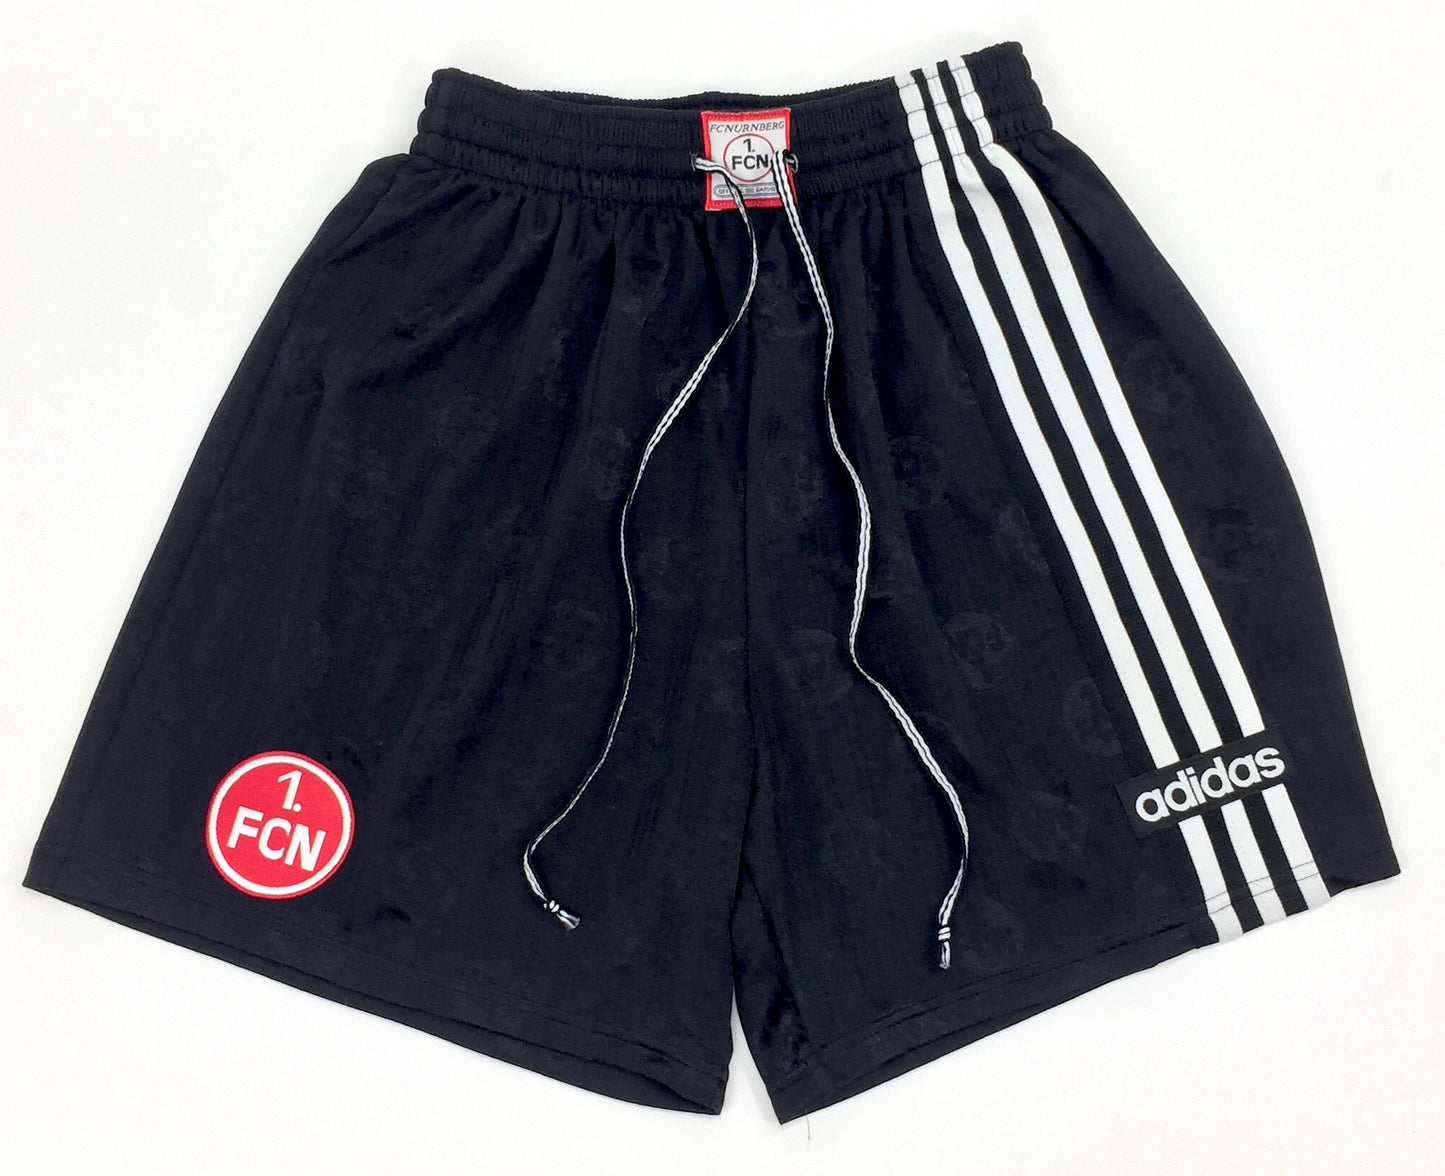 0493 Adidas Vintage FC Nürnberg Soccer Track Shorts